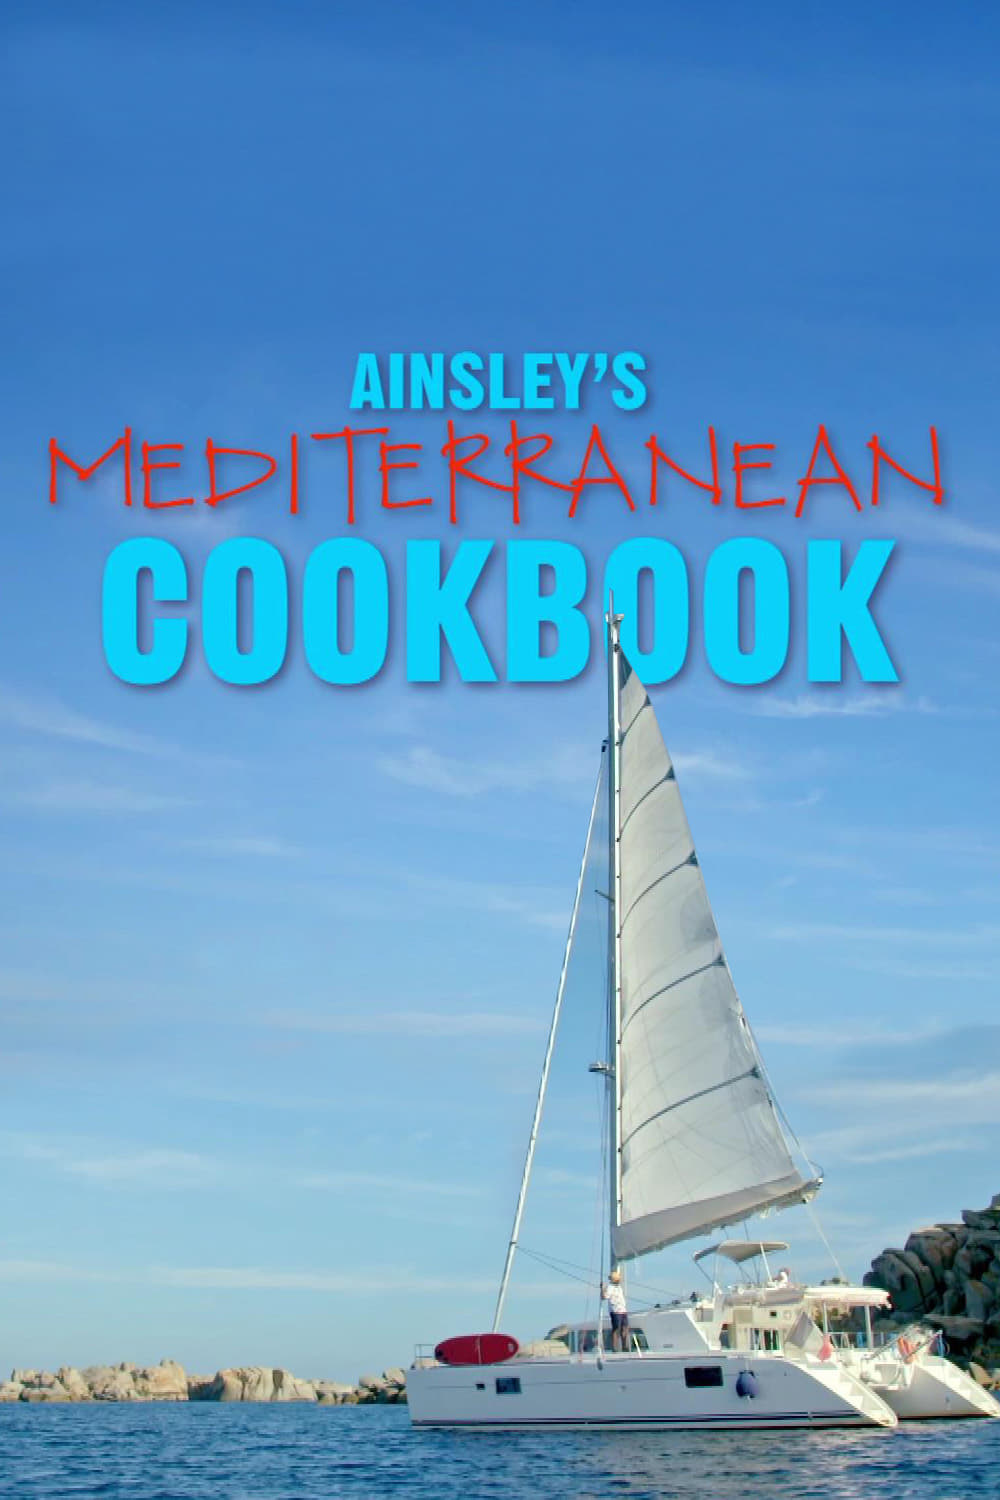 Ainsley Mediterranean Cookbook